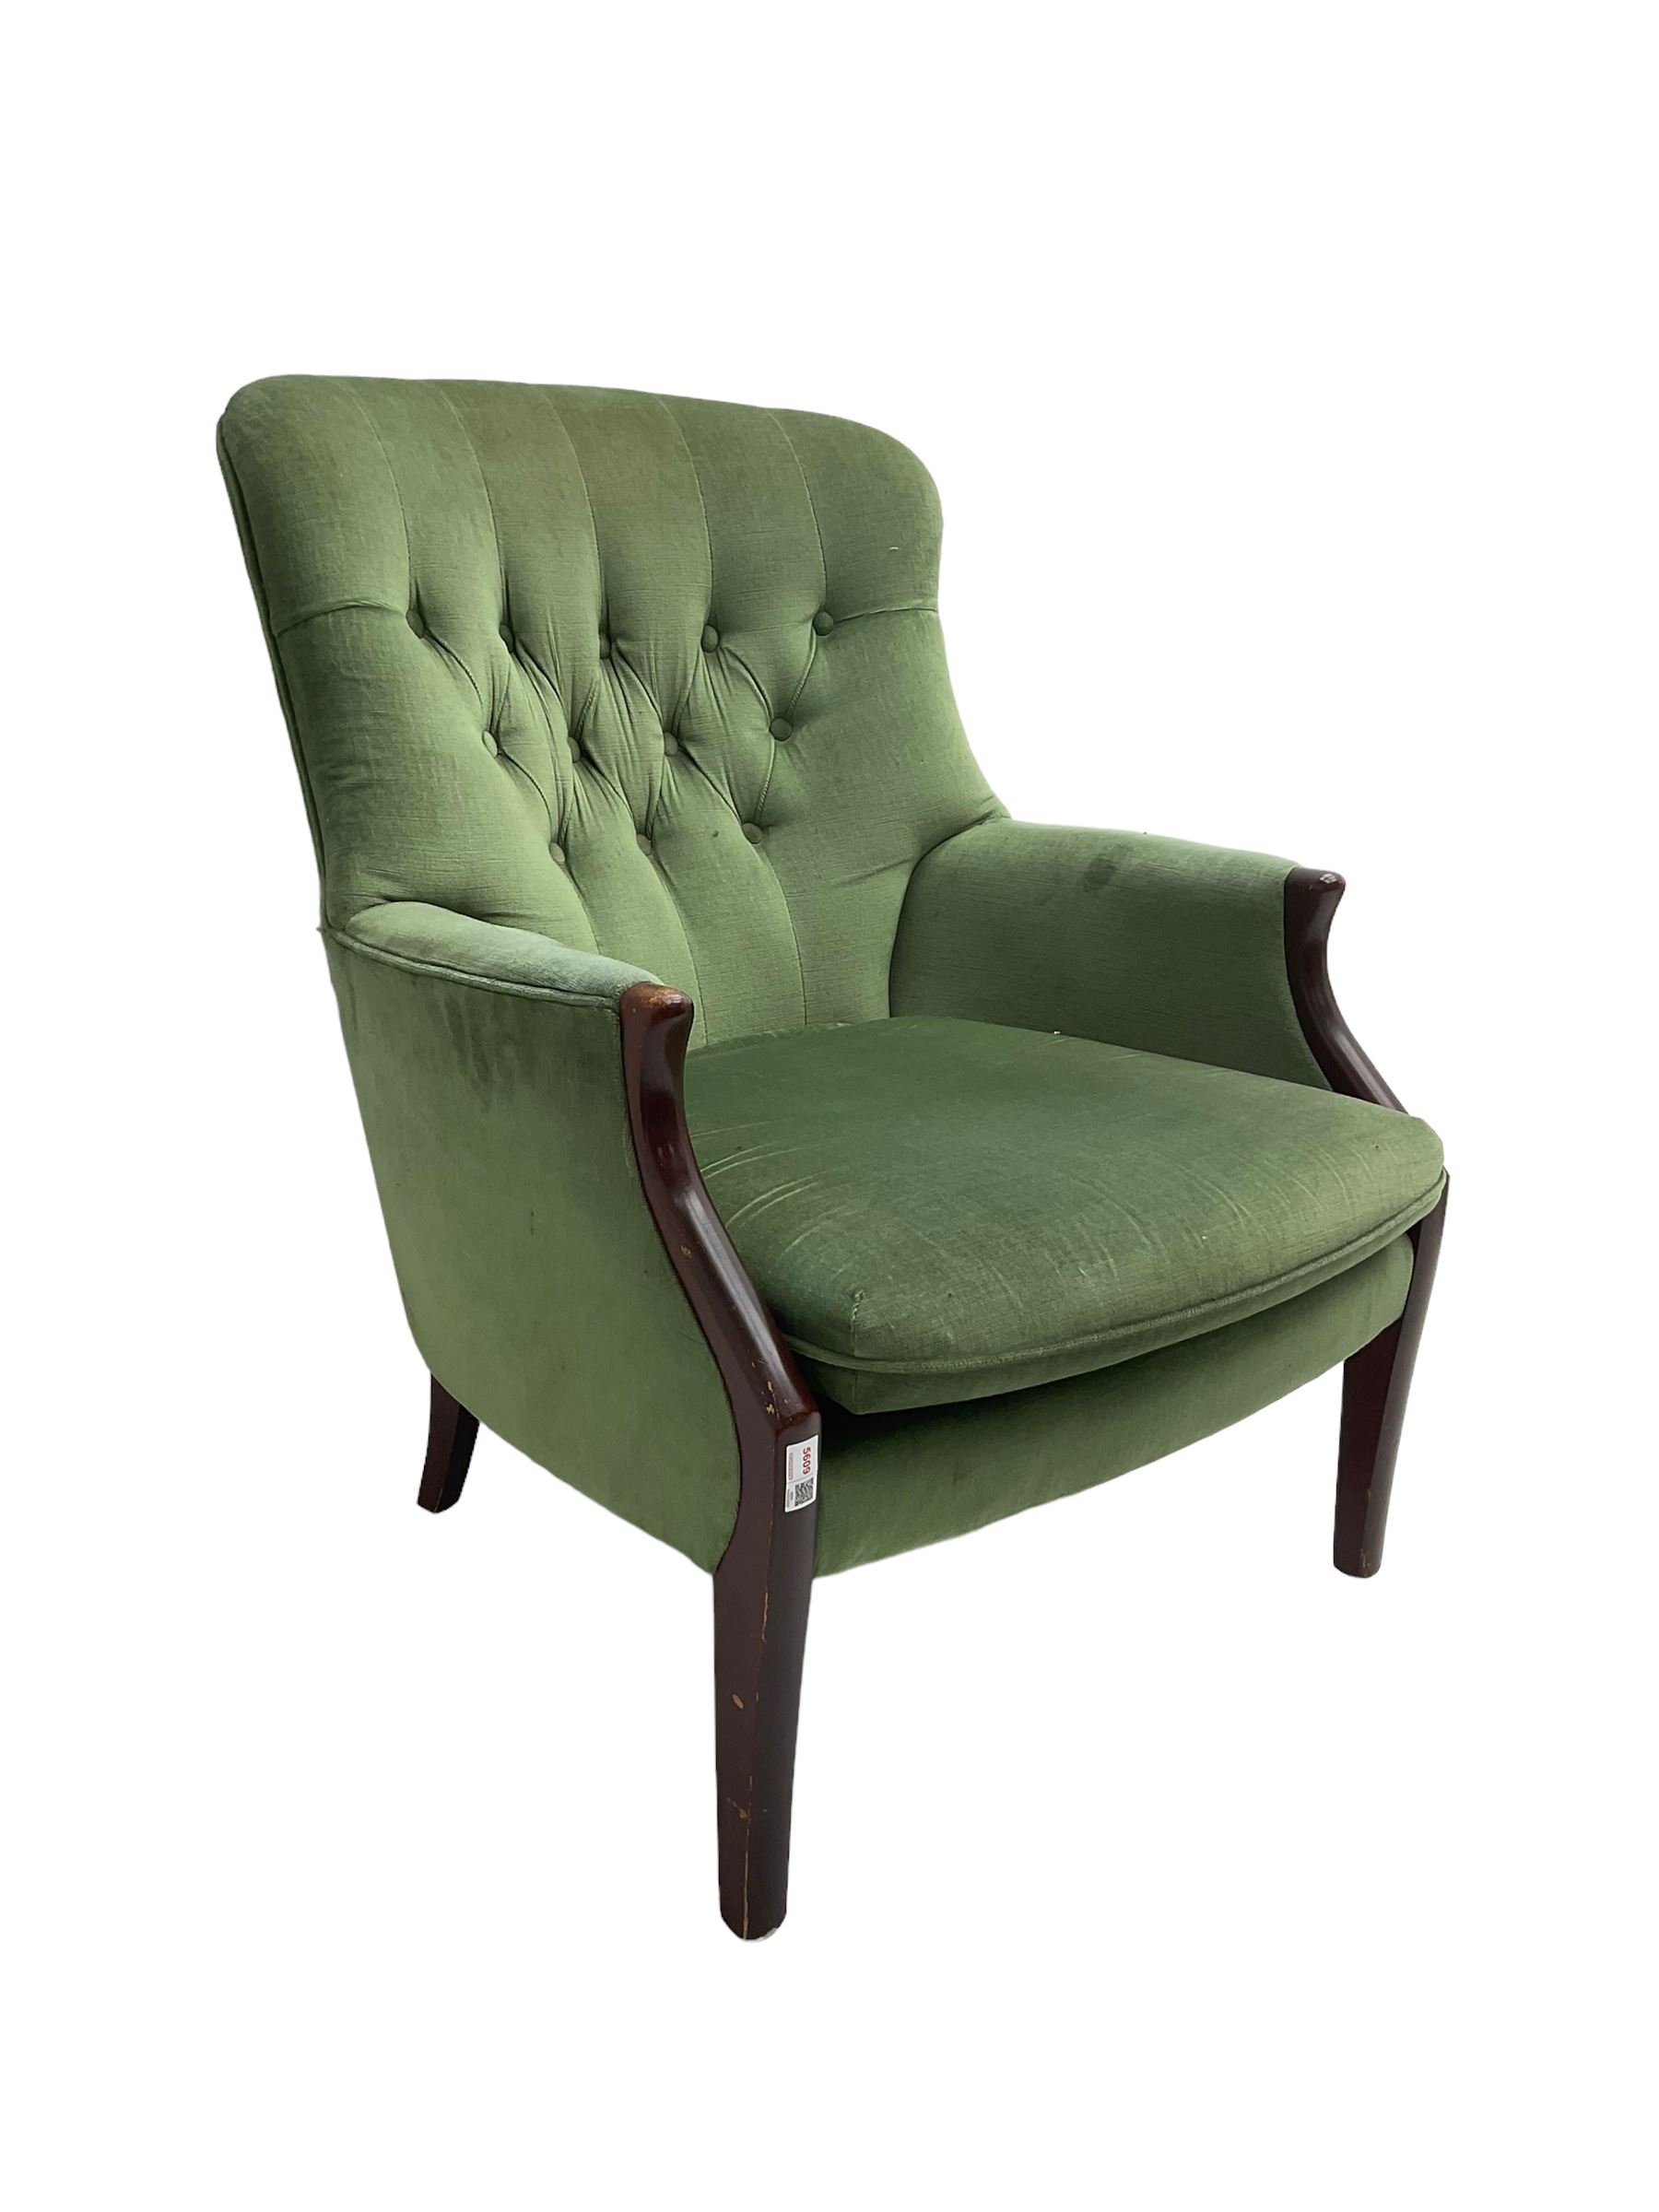 Parker Knoll - hardwood framed armchair - Image 6 of 6